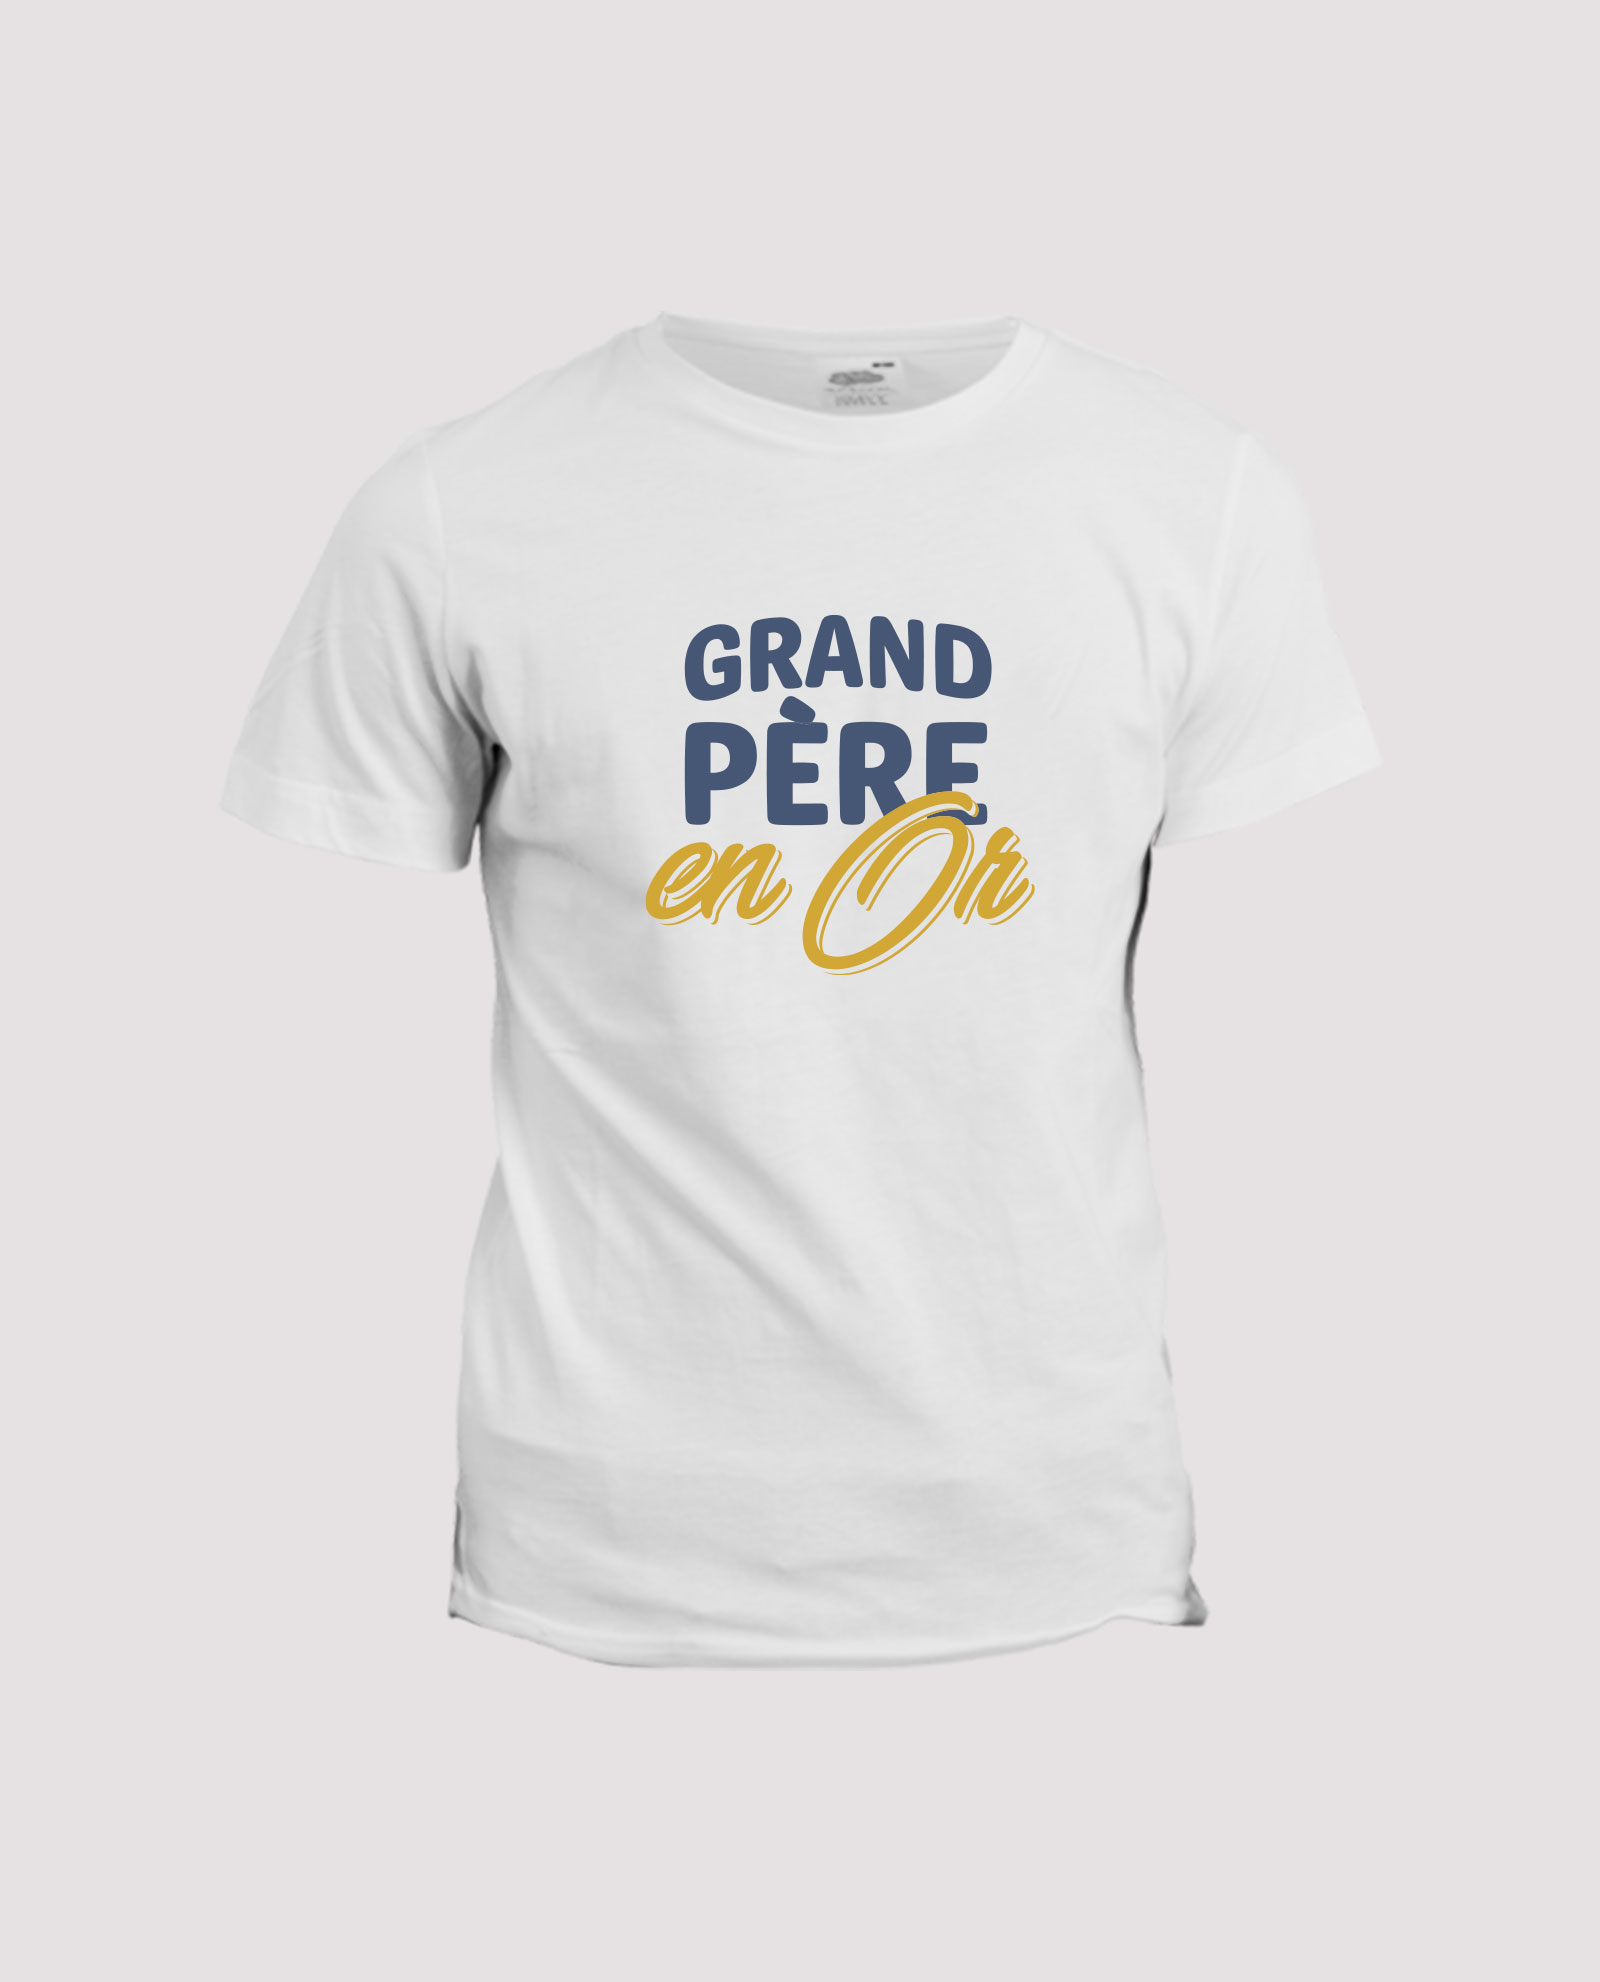 https://laligneshop.com/wp-content/uploads/2021/09/la-ligne-shop-t-shirt-blanc-homme-idee-cadeau-grand-pere-fete-des-grand-pere.jpg